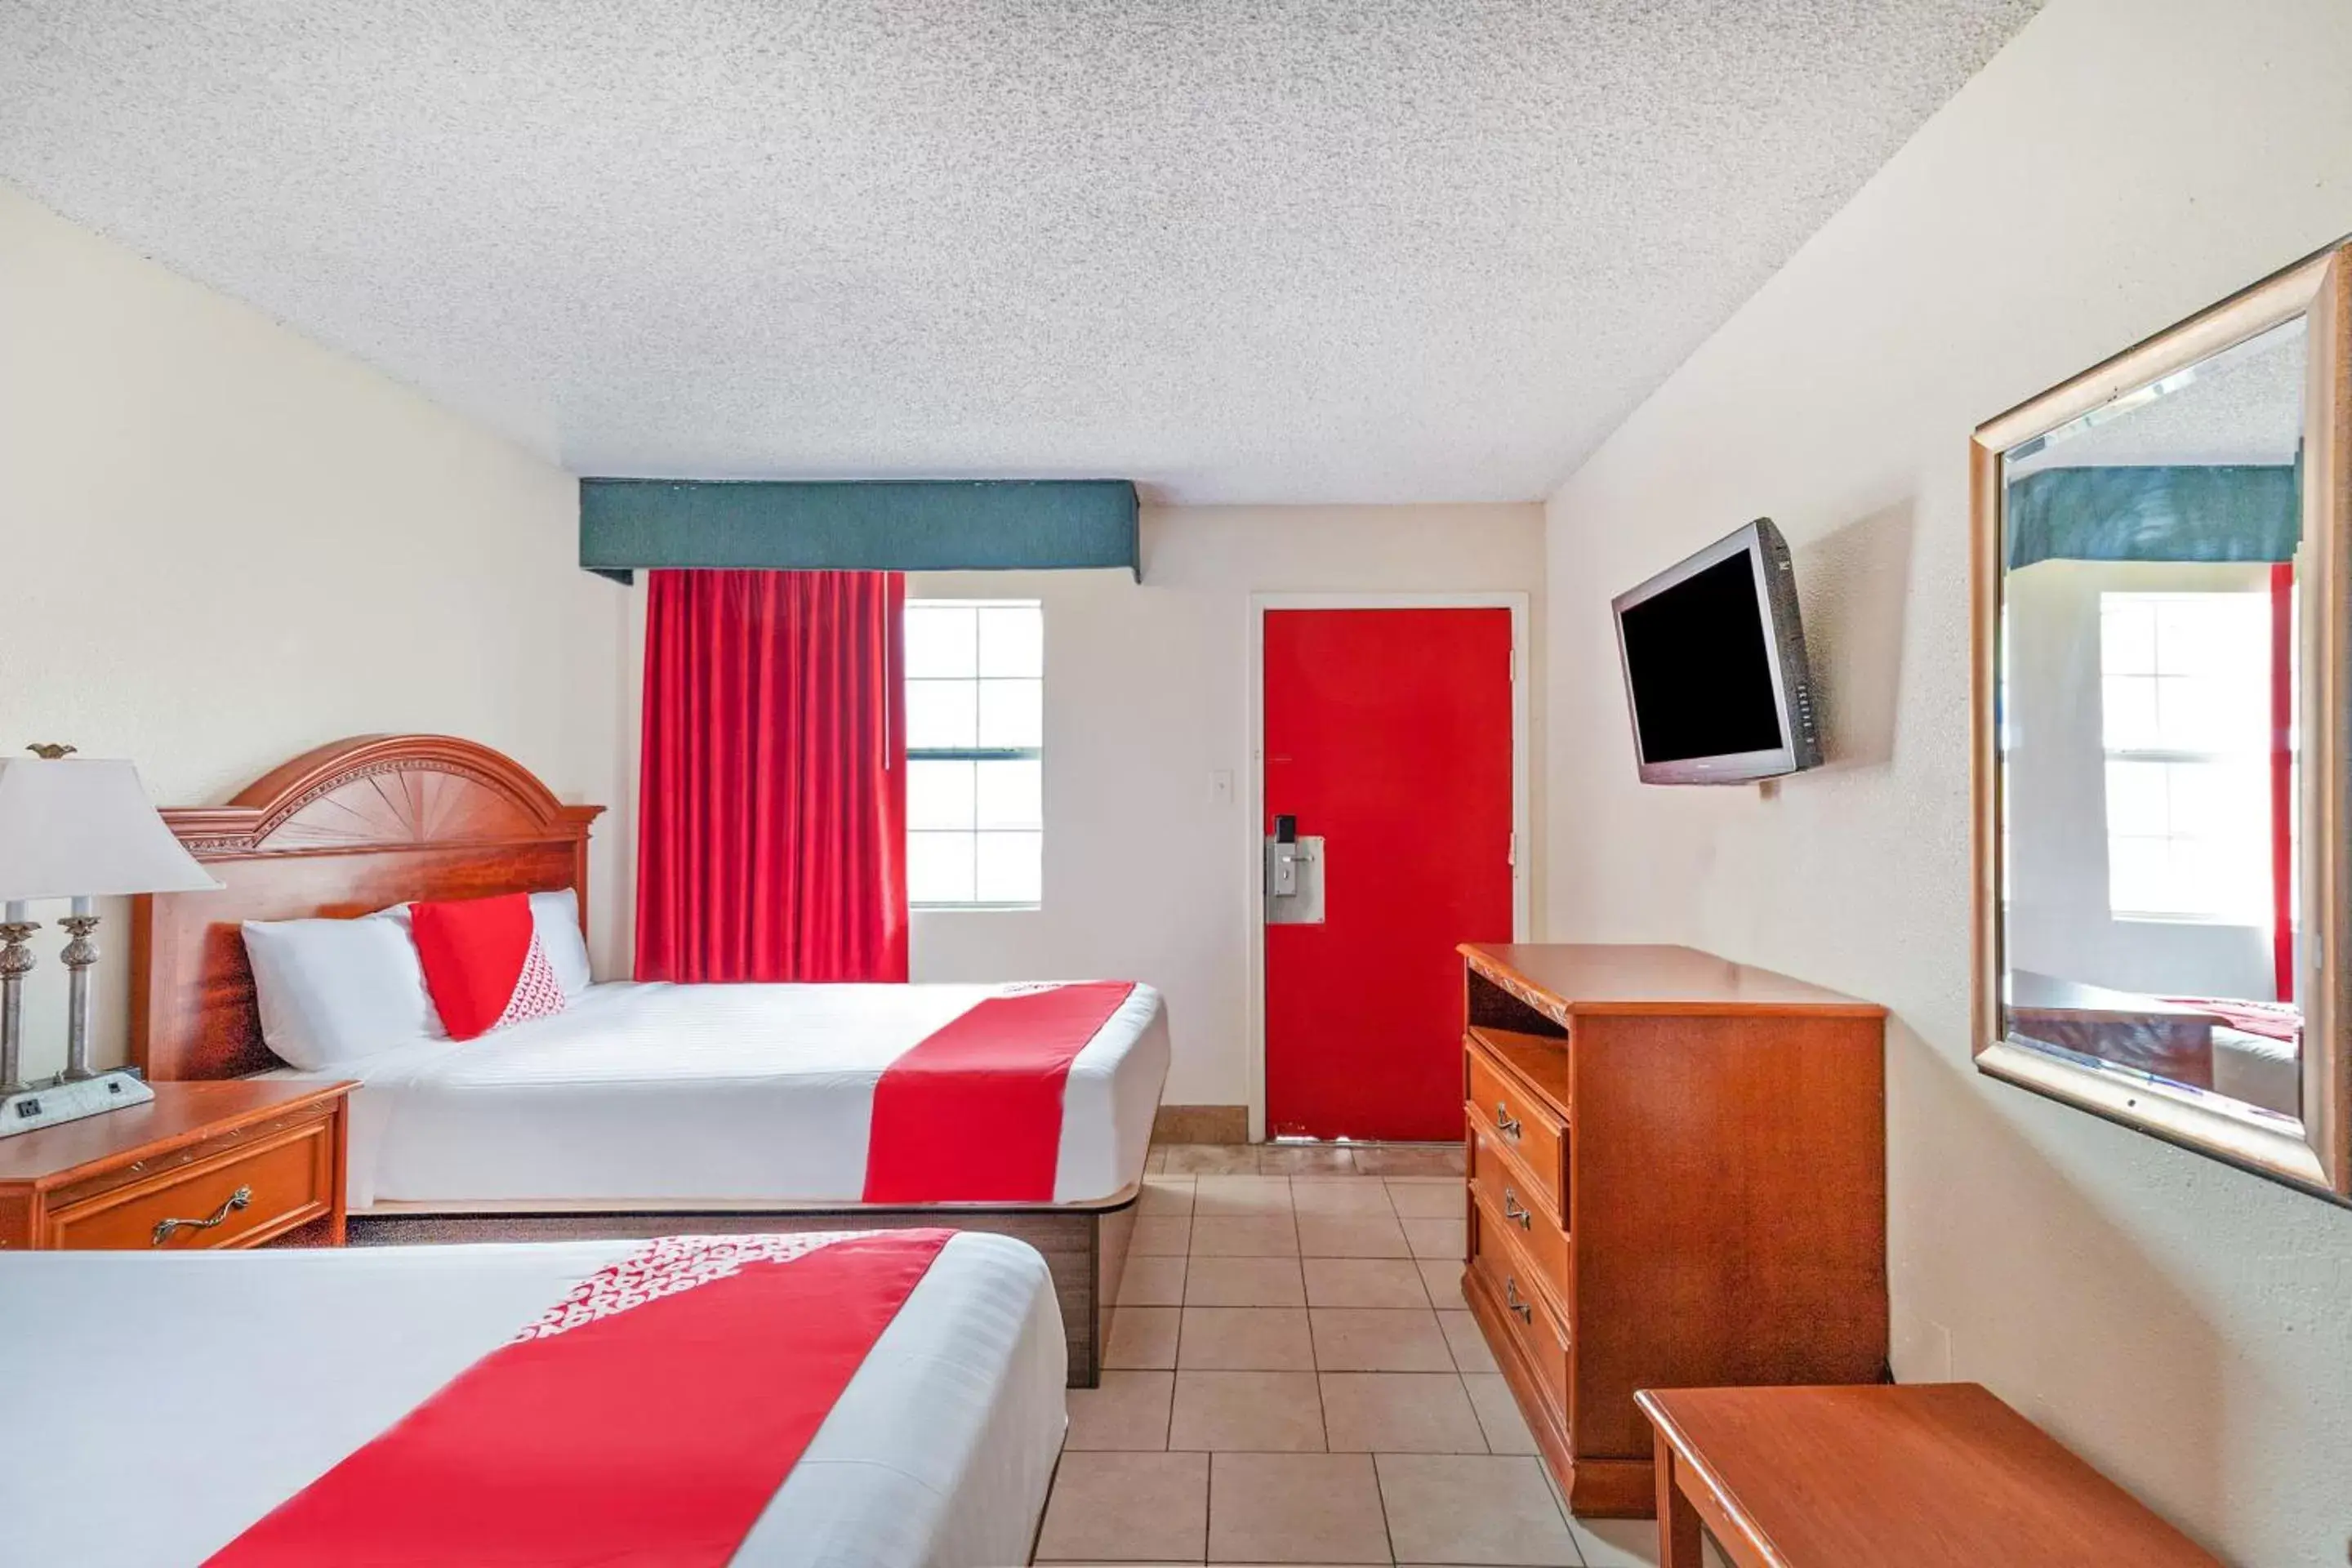 Bedroom, Room Photo in OYO Hotel San Antonio Lackland near Seaworld